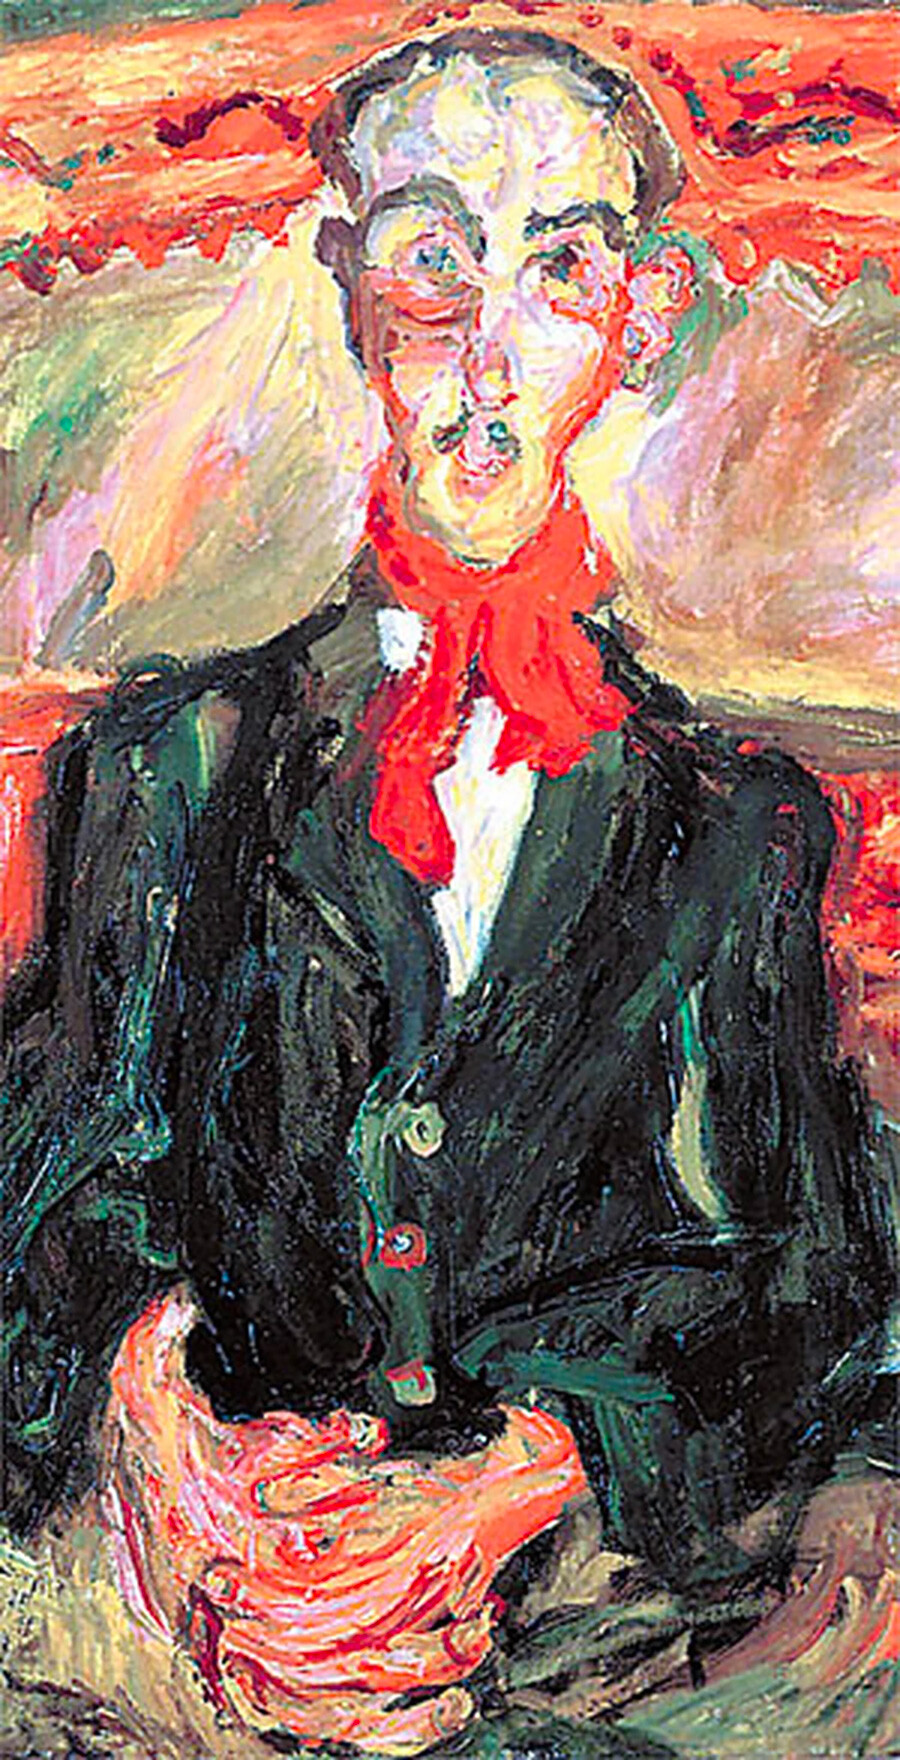 Chaïm Soutine. Man with Red Scarf, 1921